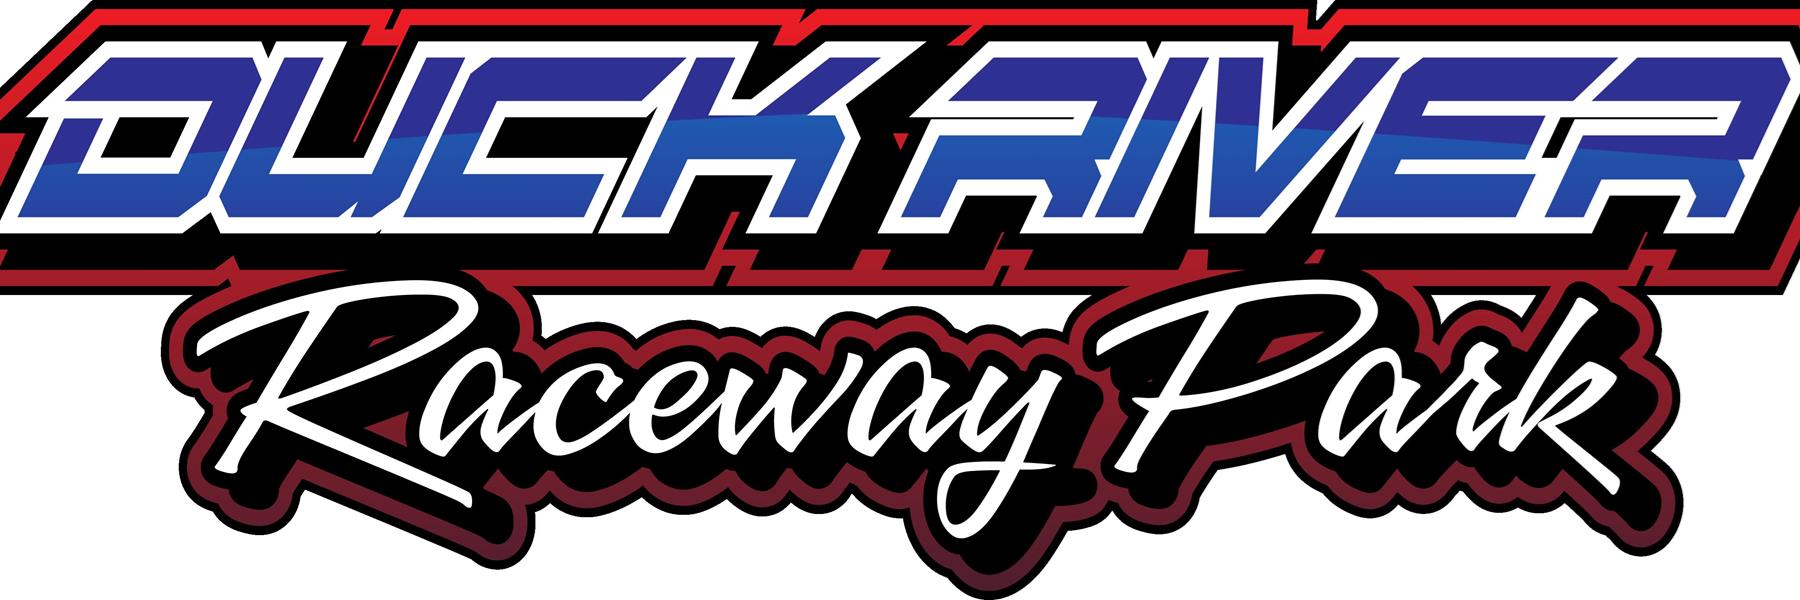 9/24/2022 - Duck River Raceway Park